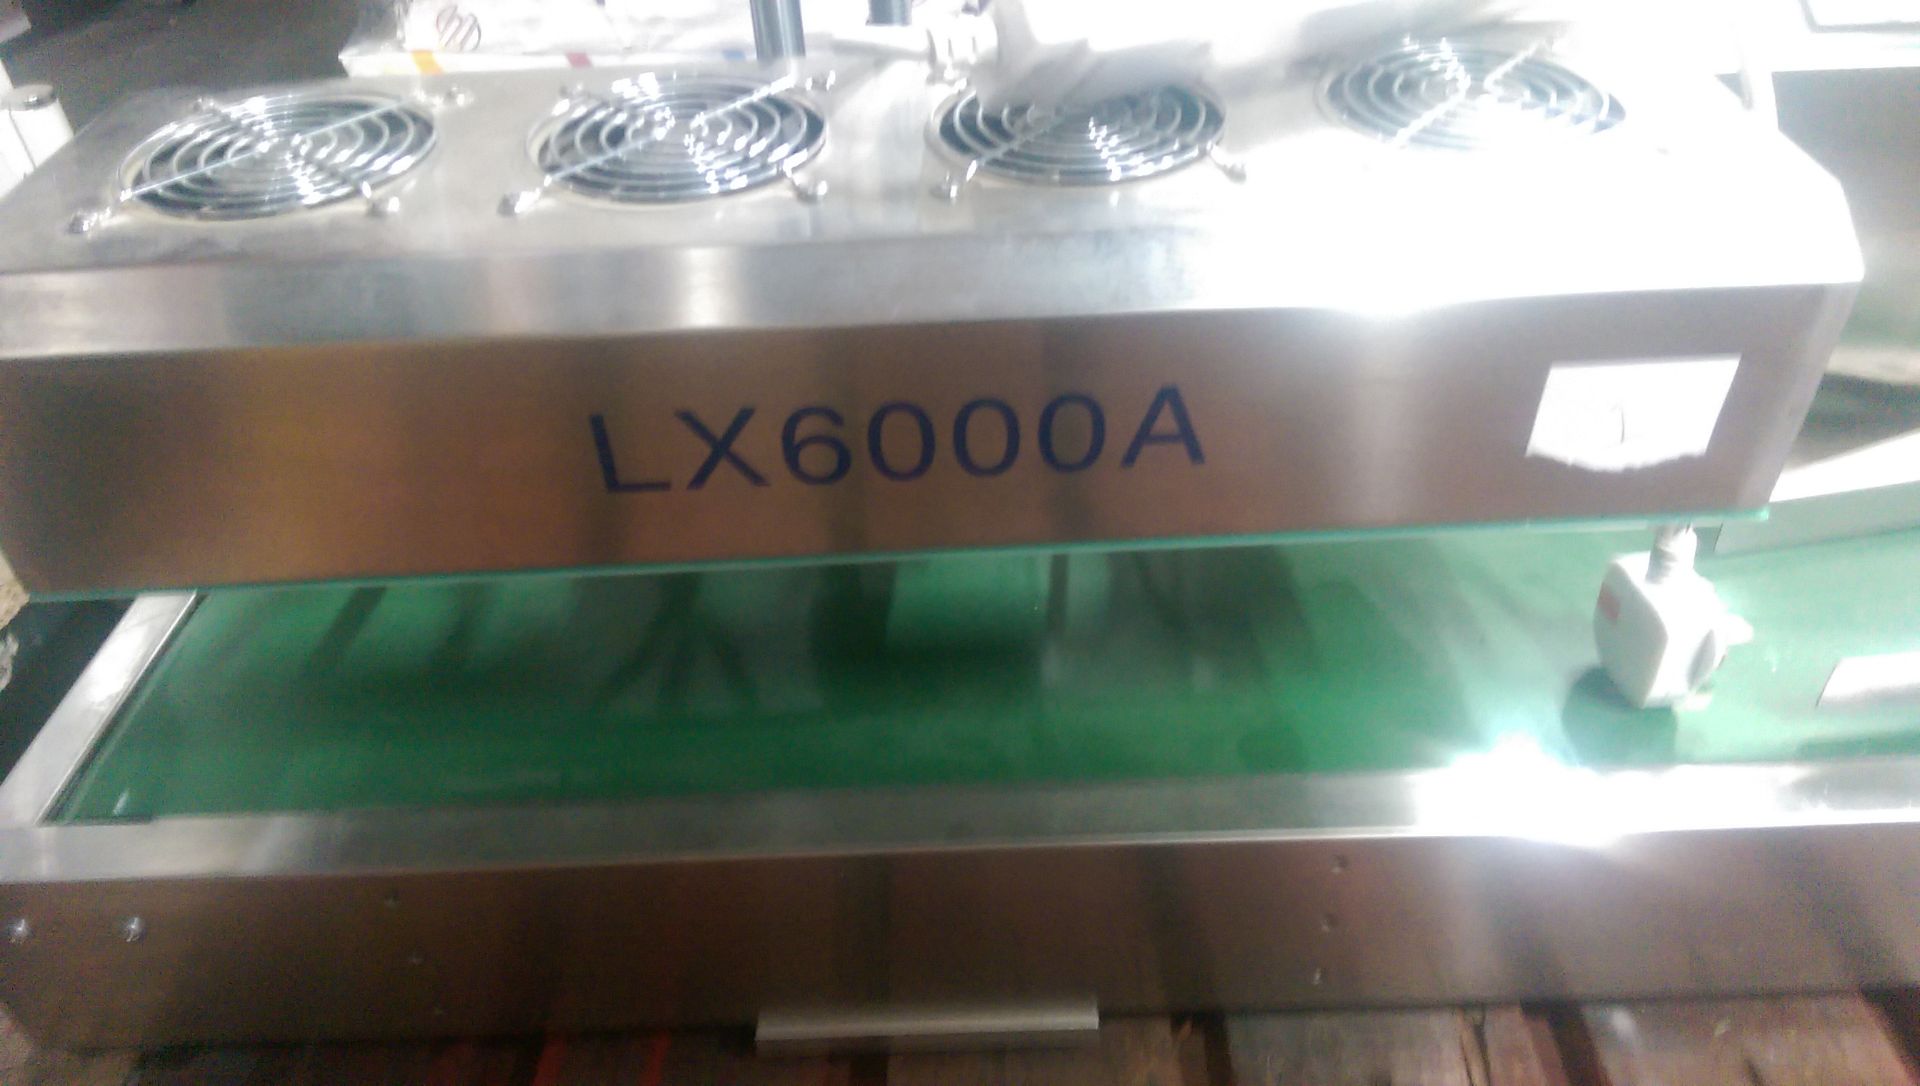 Conveyor Belt Induction Sealer – Model: LX600A - Image 3 of 3